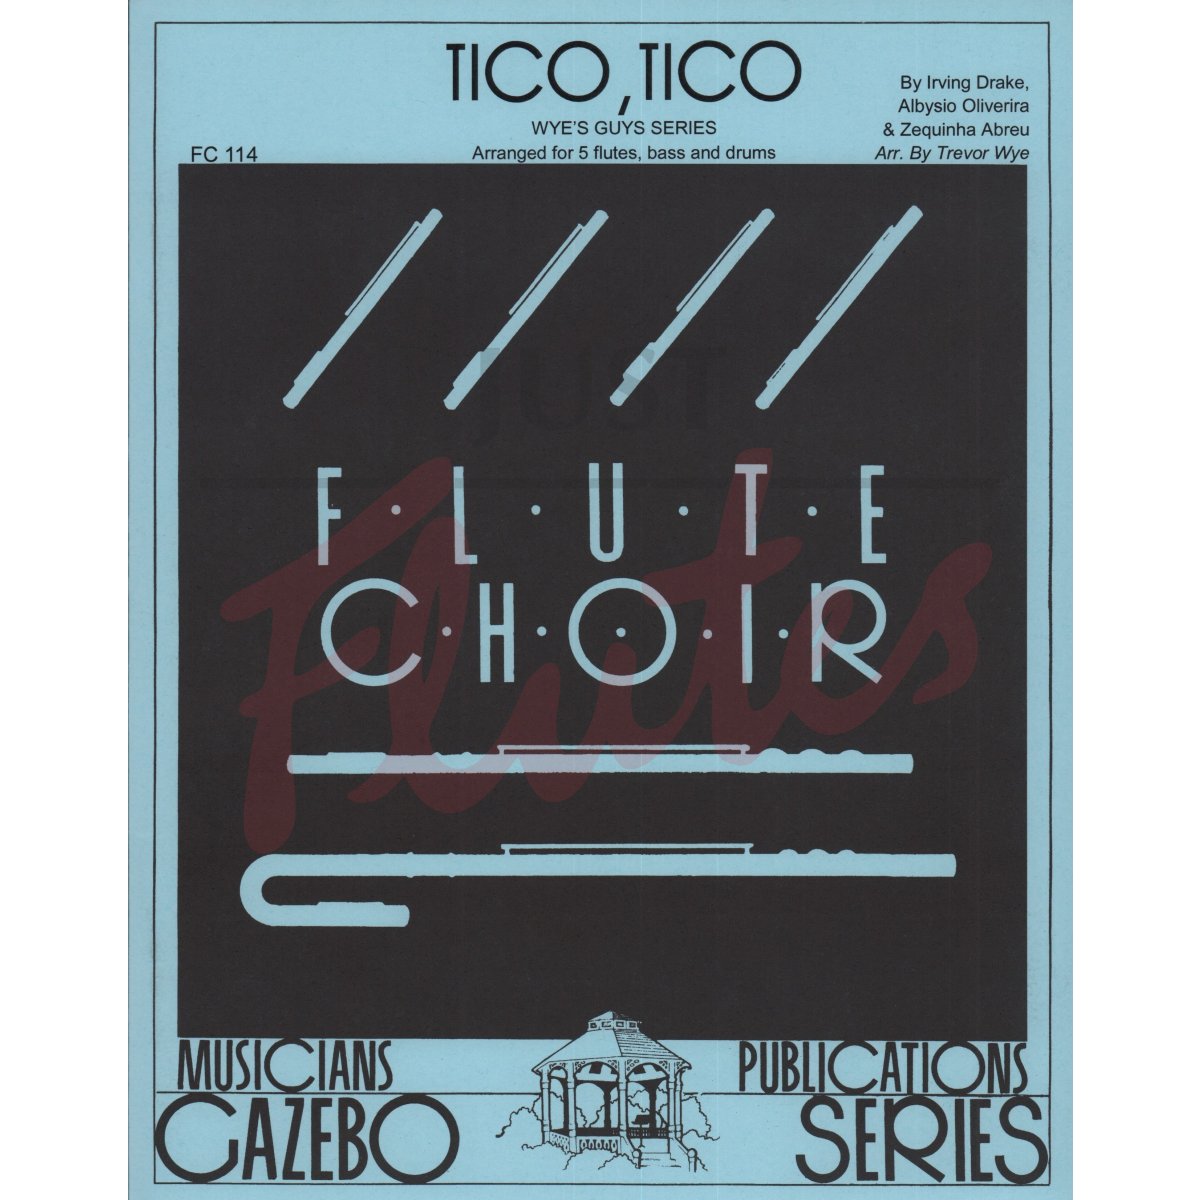 Tico Tico for Flute Choir